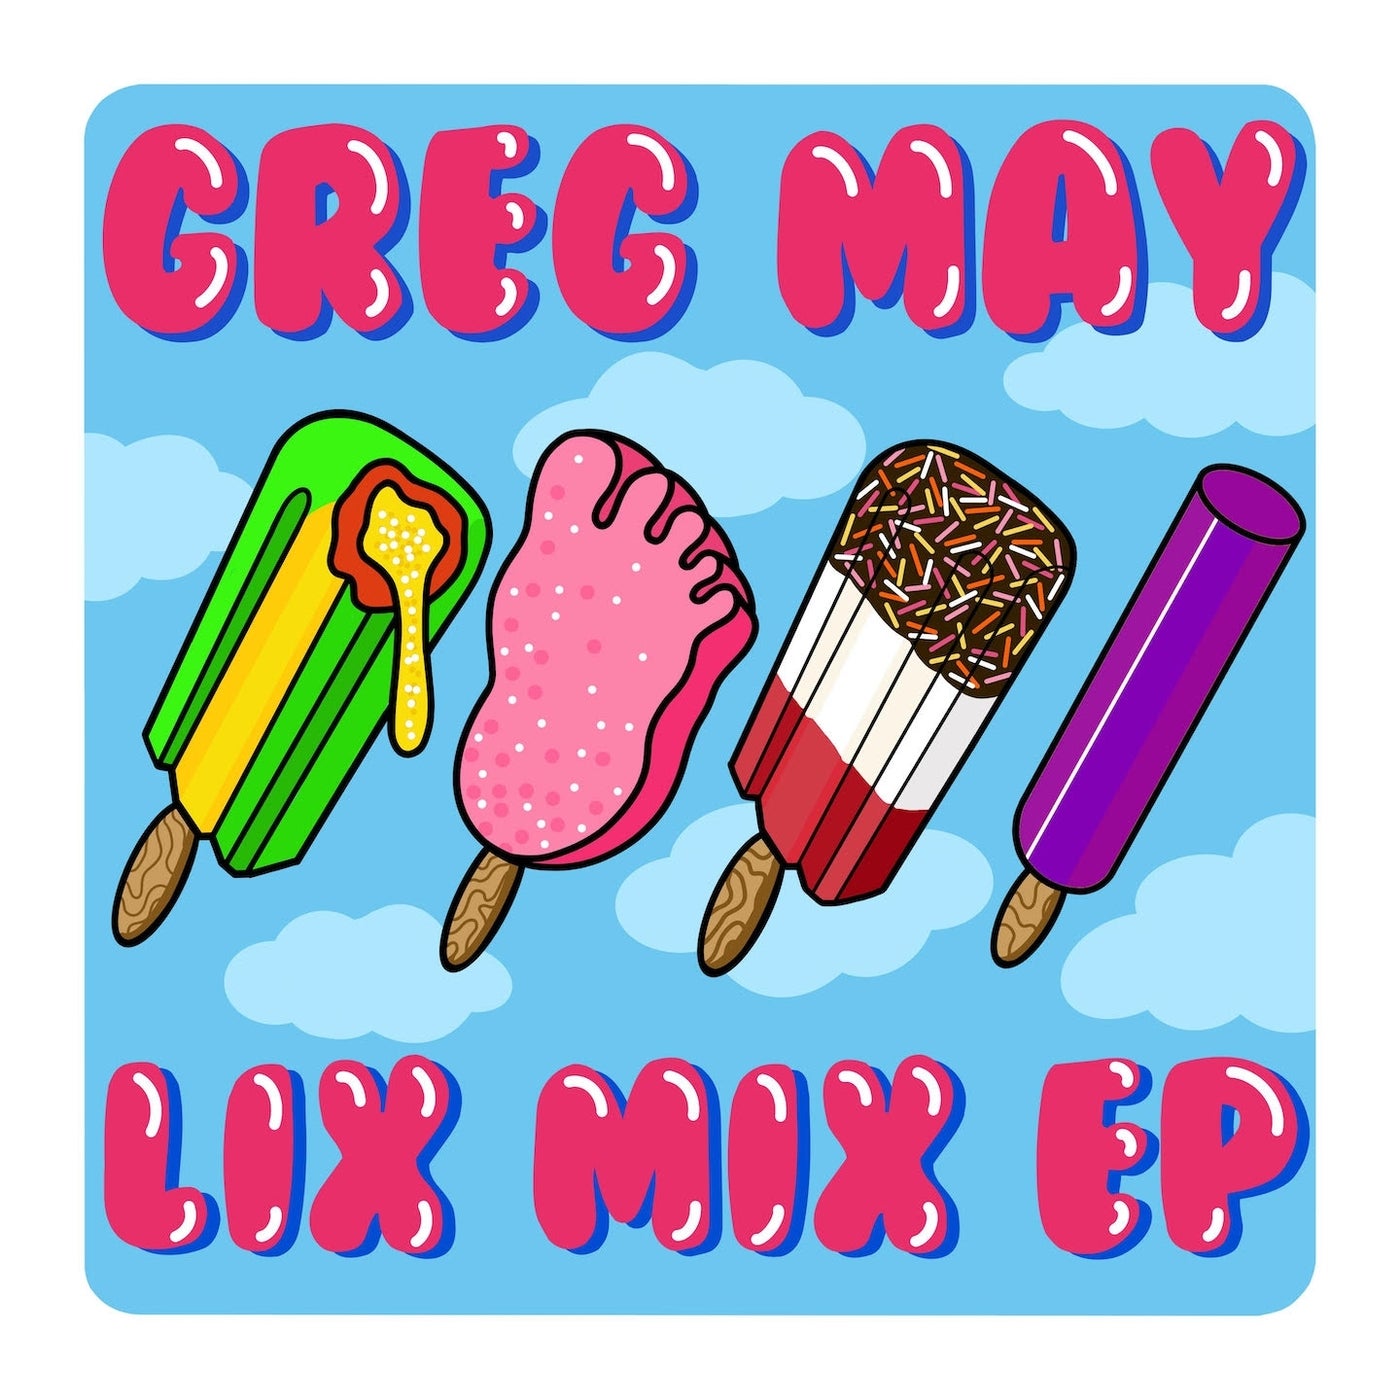 Lix Mix - EP